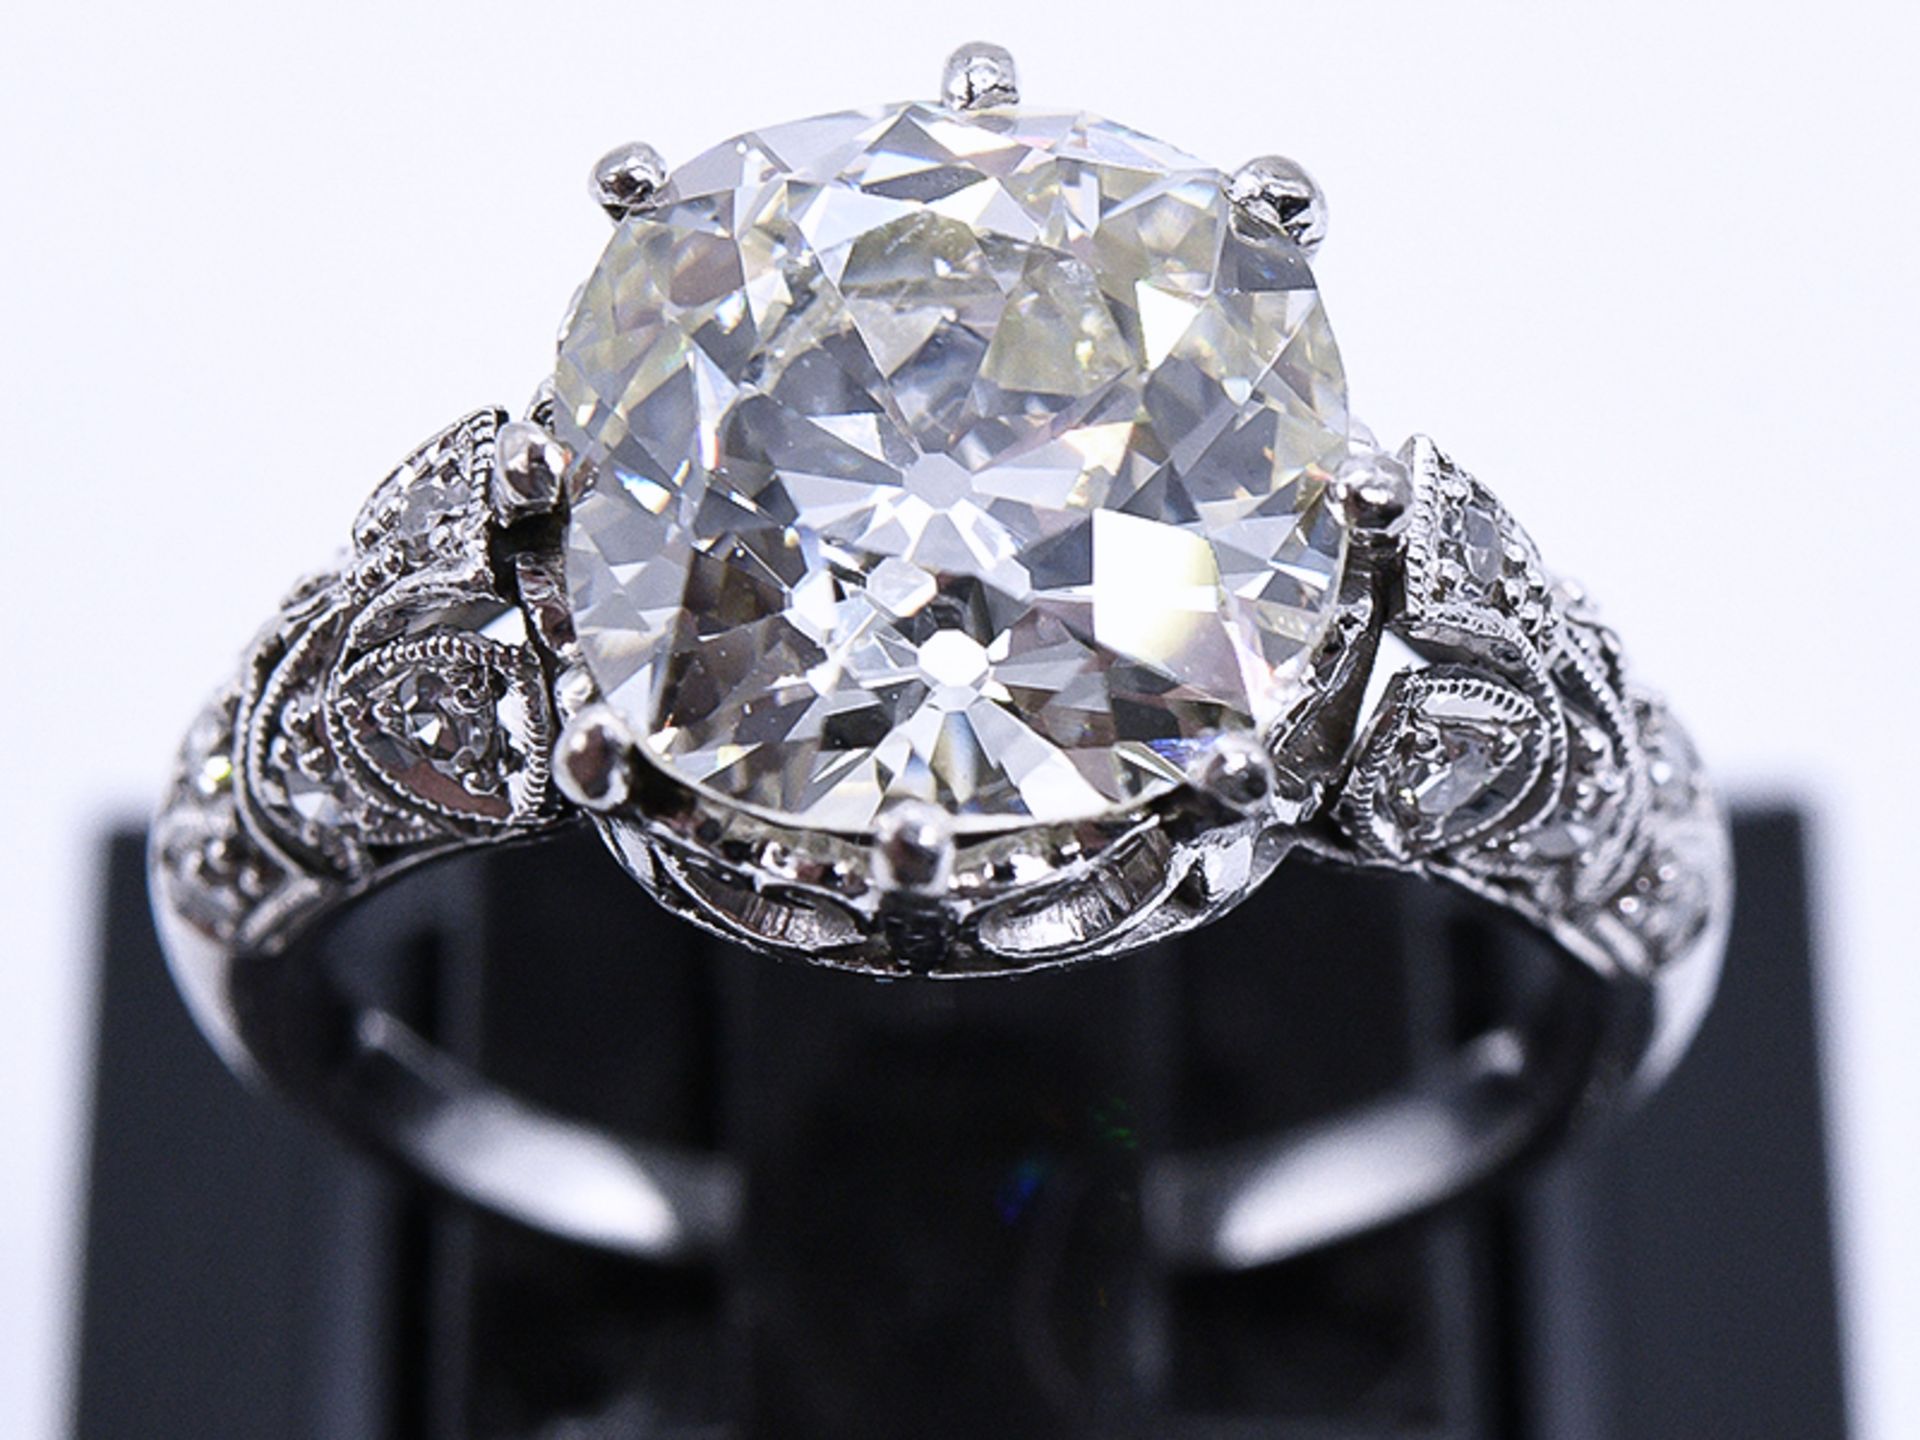 Prunkvoller Art-Deco Ring mit Altschliff-Diamant ca. 5,6 ct und kleinen Diamanten, zus. 0,1 ct, Juw